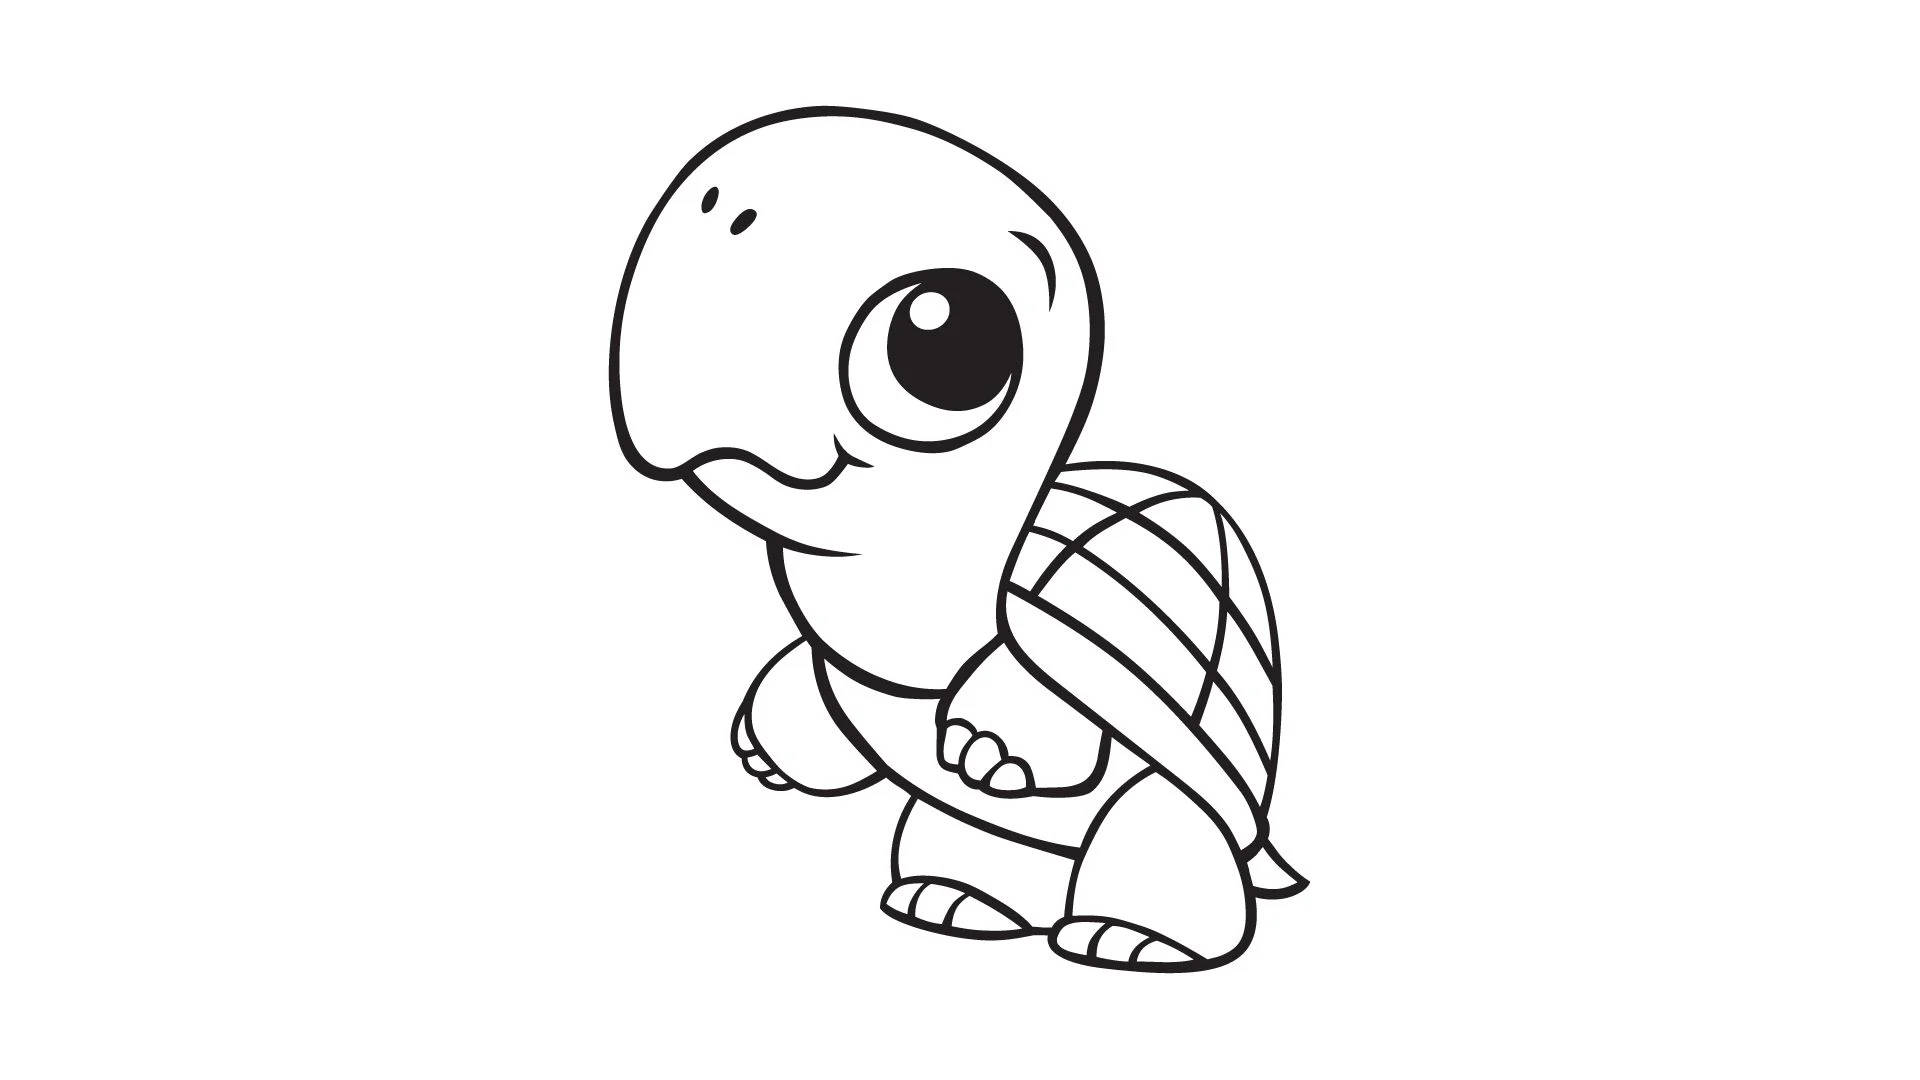 Cutest turtle cute pet tortoise animal cartoon style